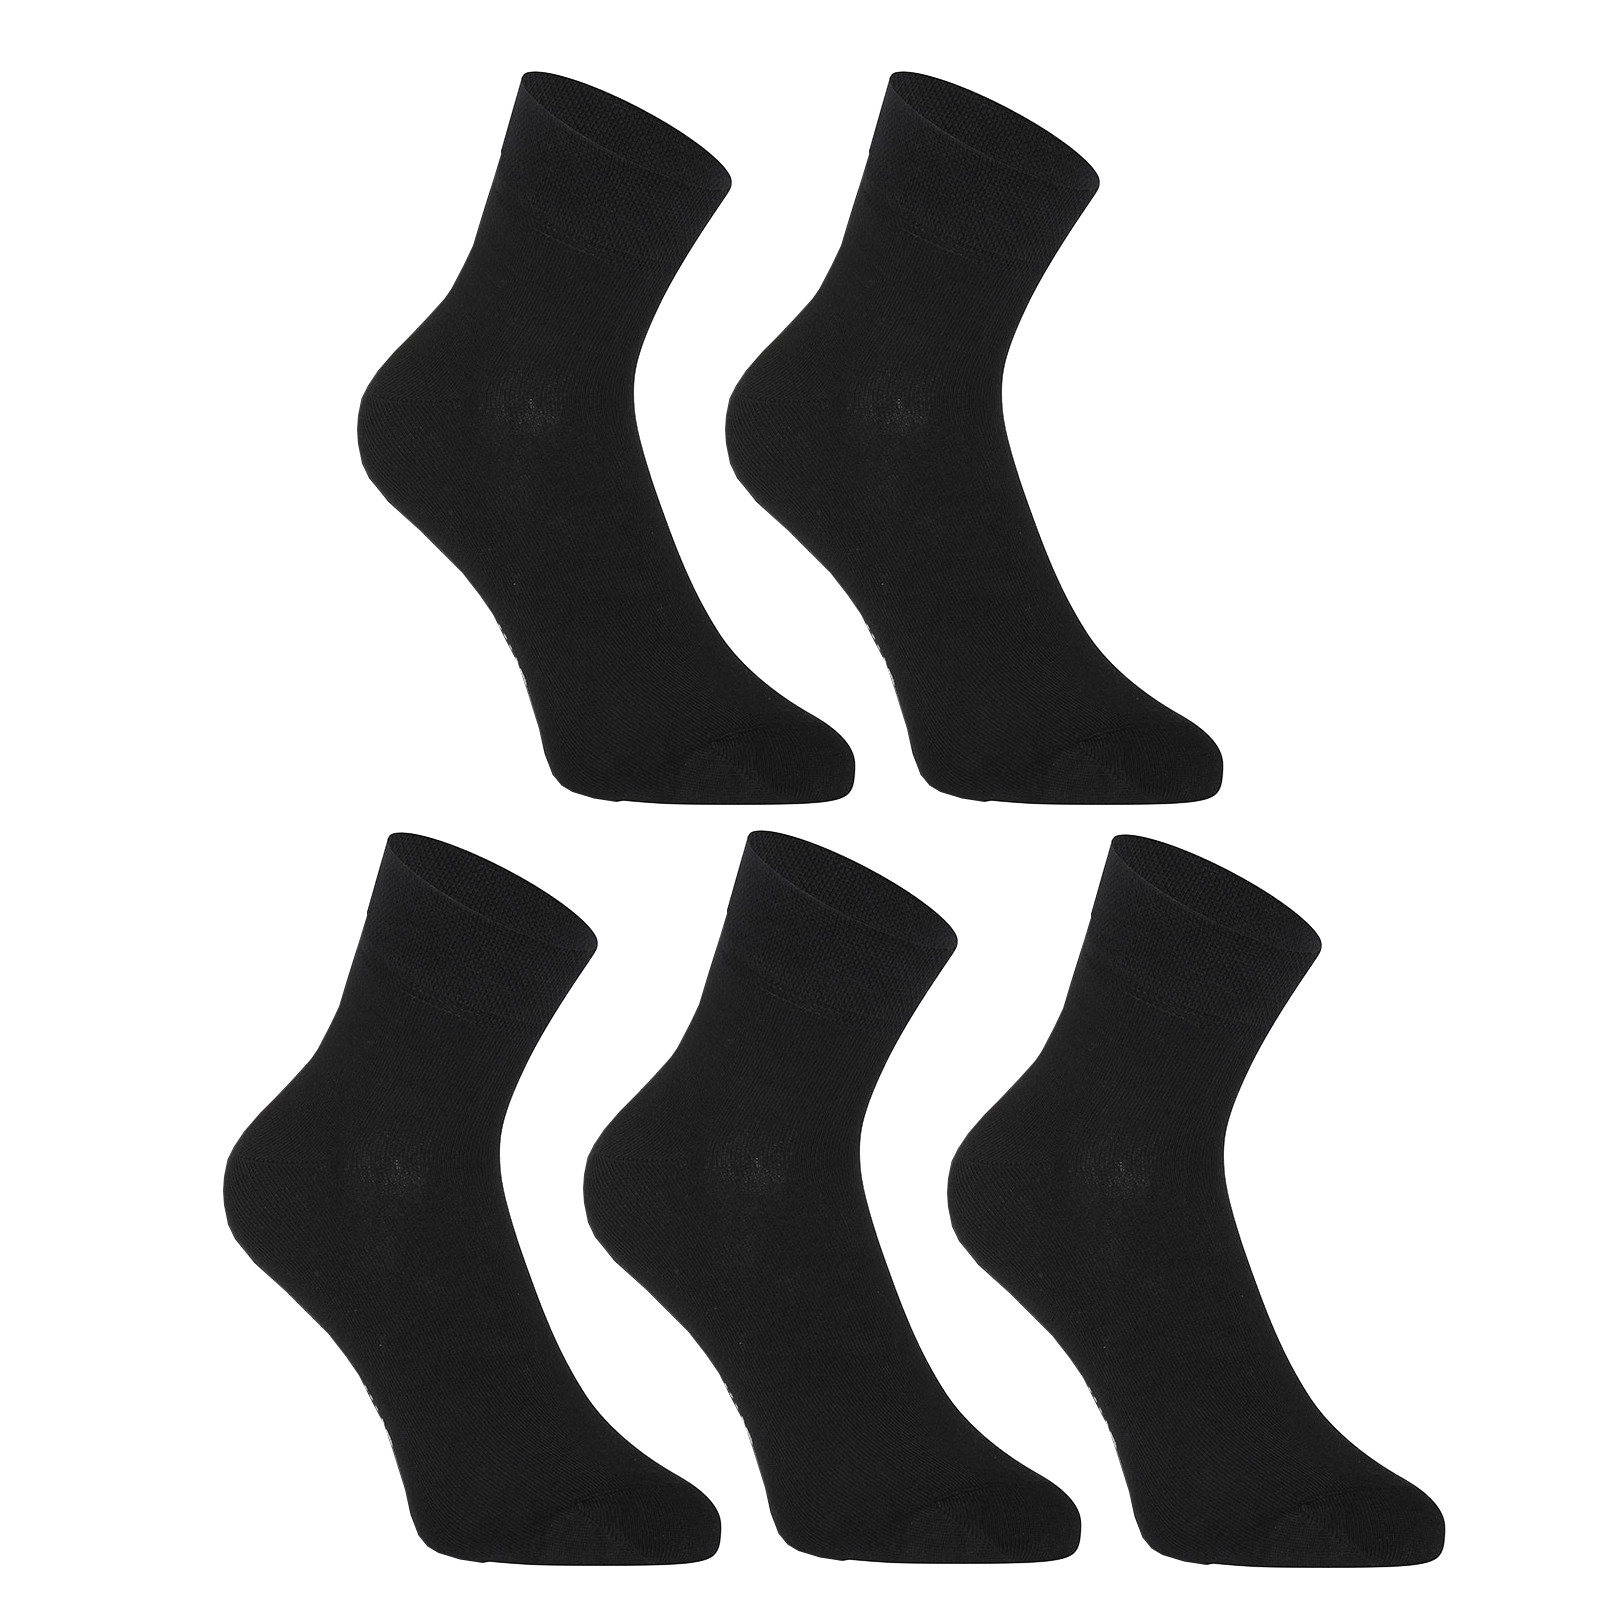 5PACK ponožky Styx kotníkové bambusové černé (5HBK960)  S